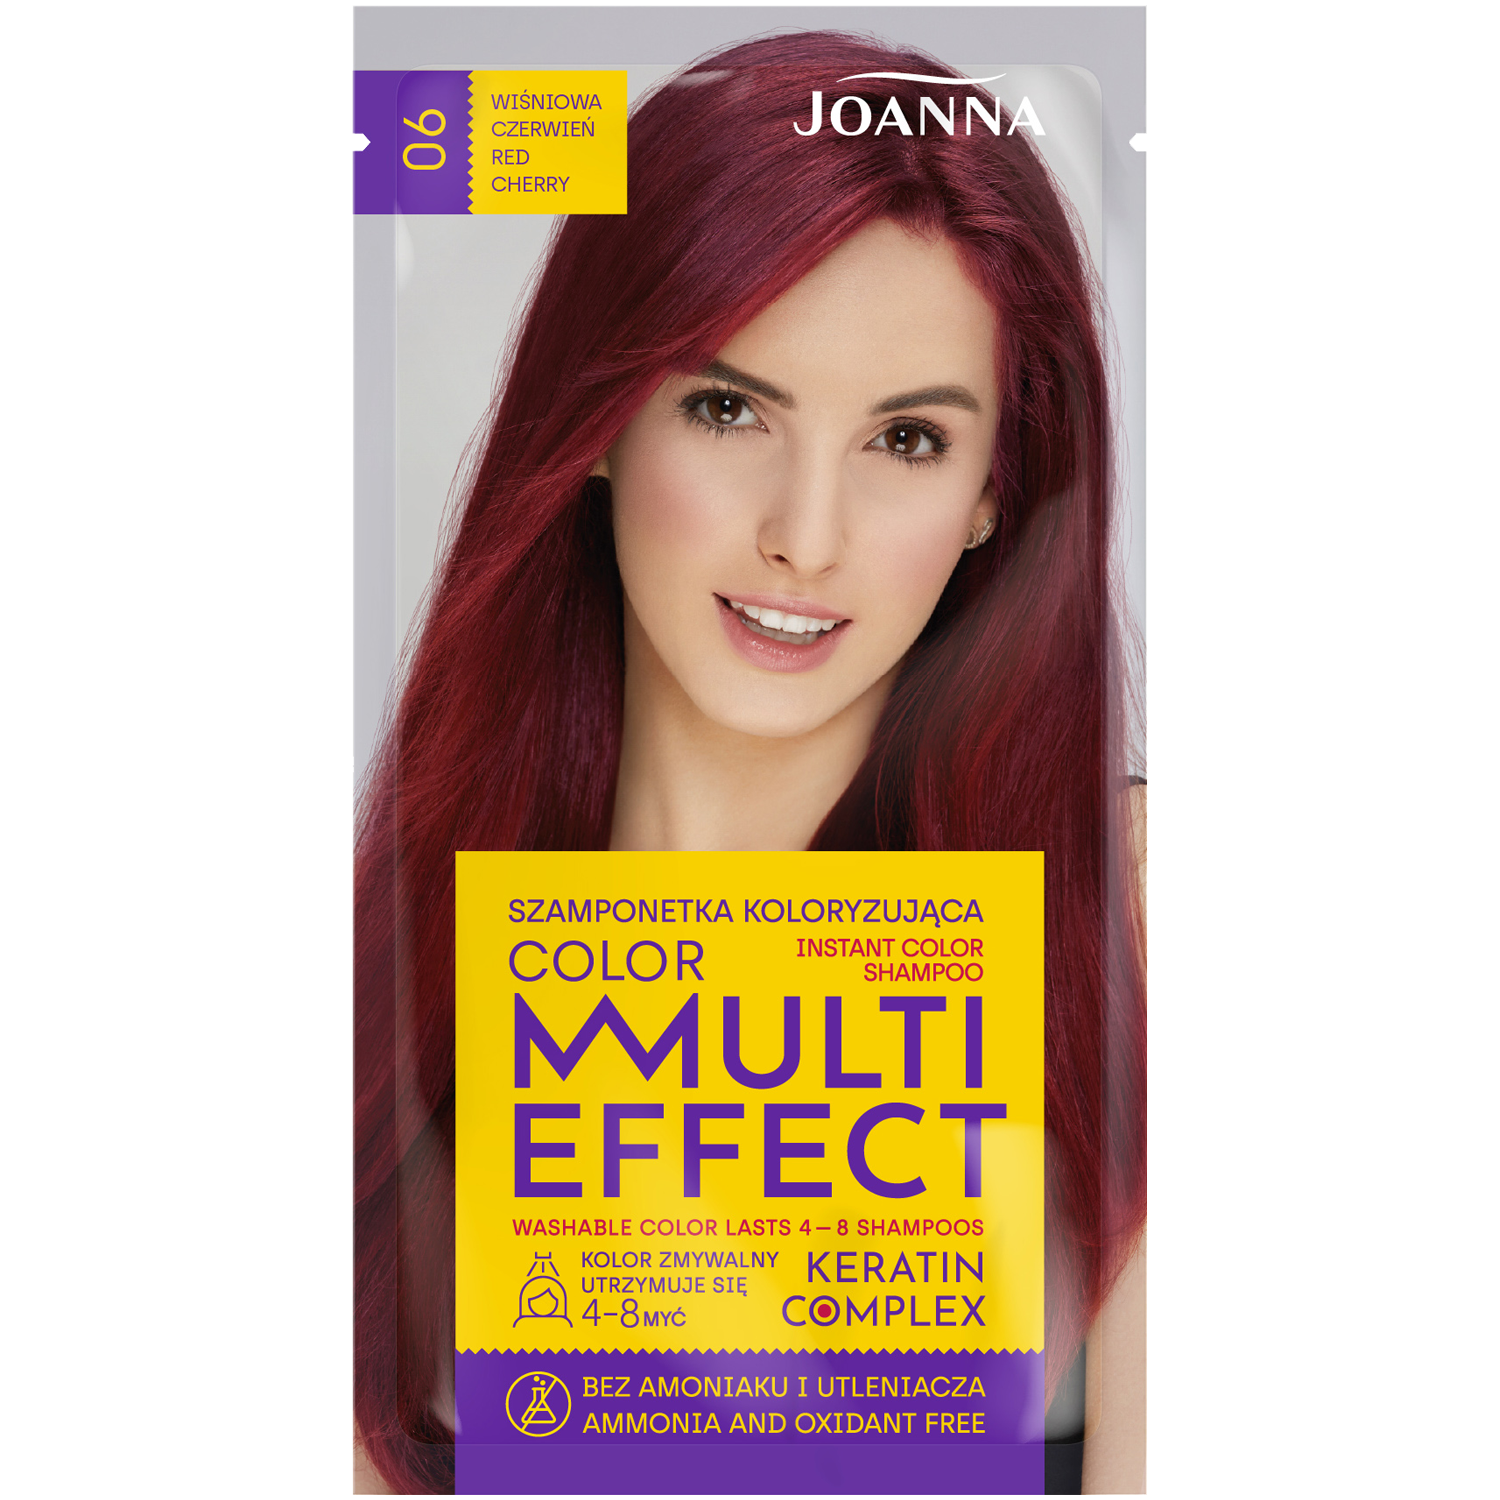 Joanna Multi Effect шампунь-краска для волос 06 вишнево-красный, 1 упаковка